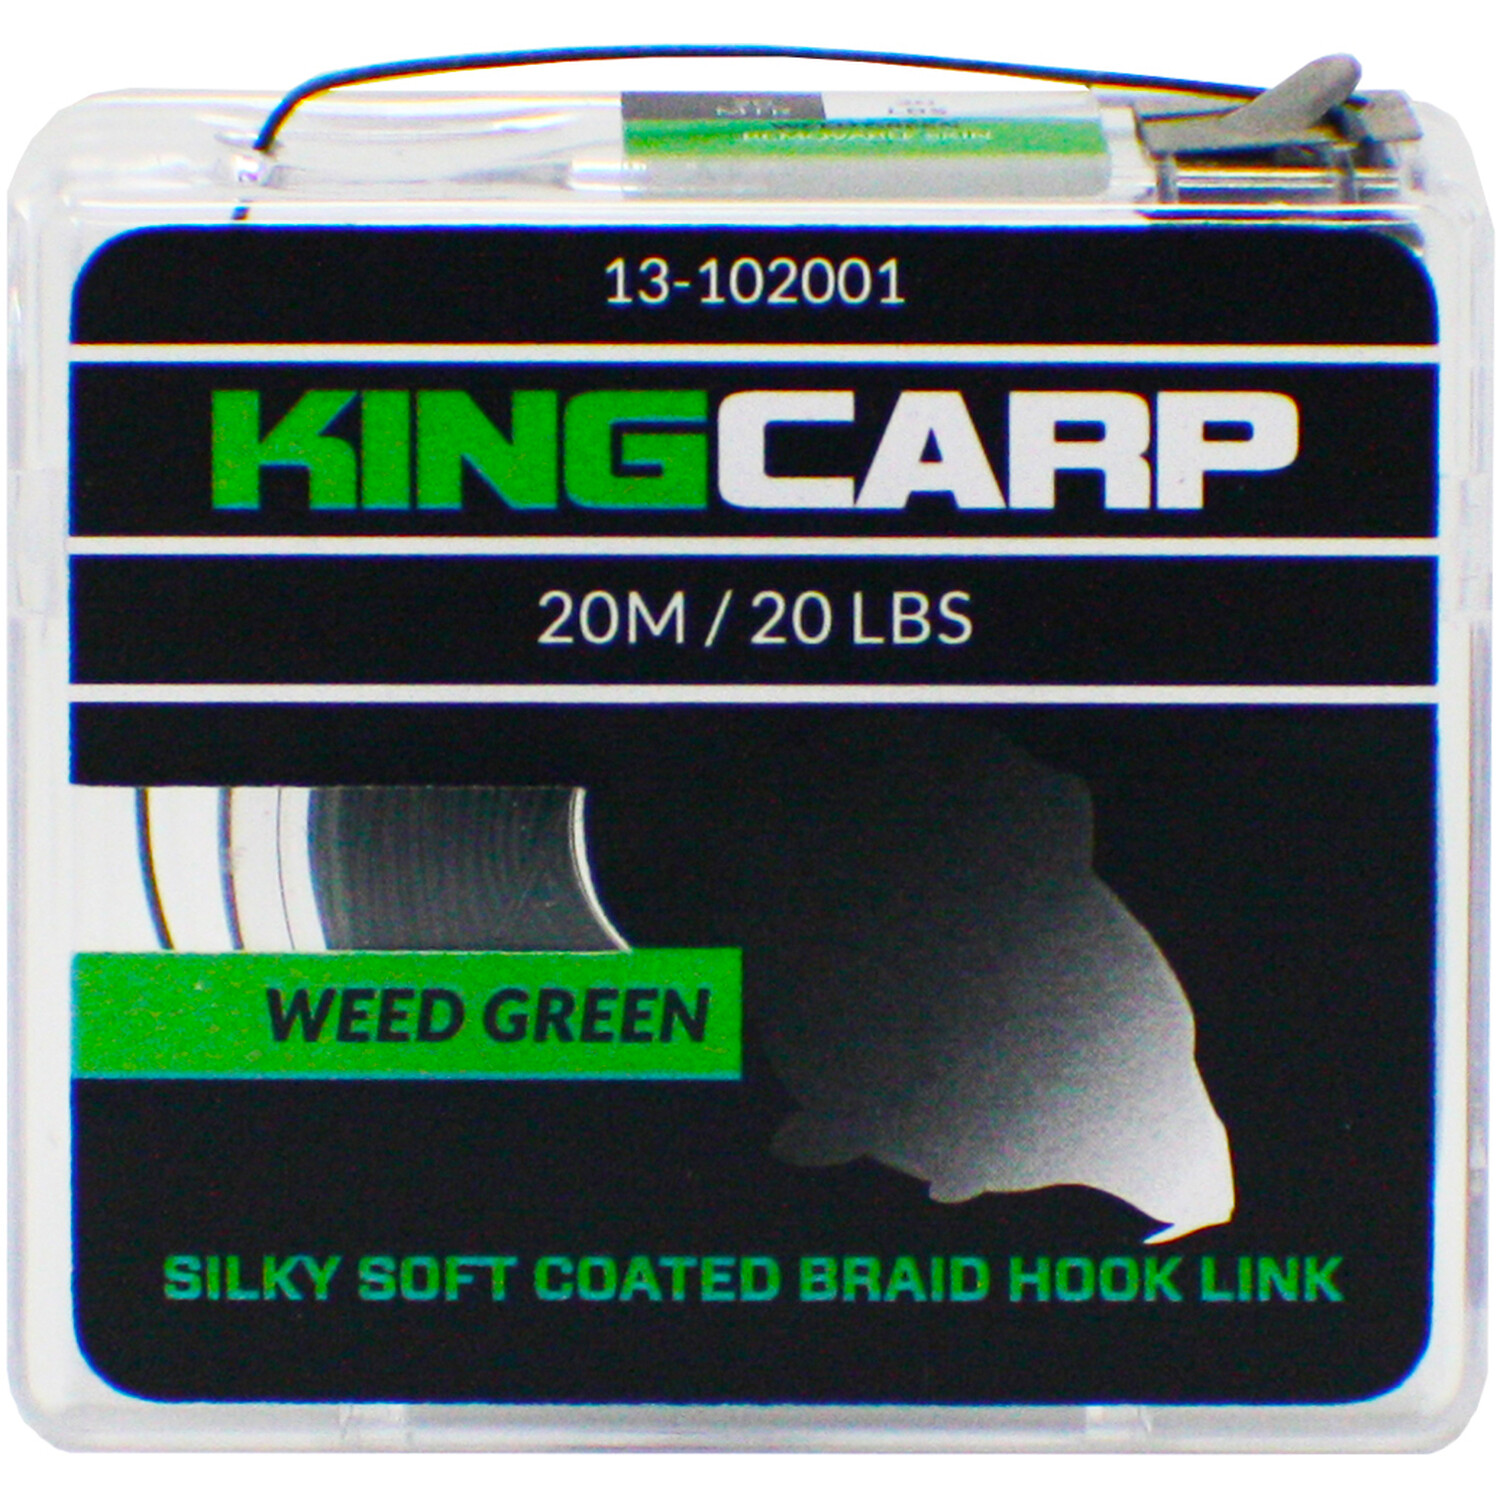 Weed Green King Carp Coated Braid Hook Link Image 1